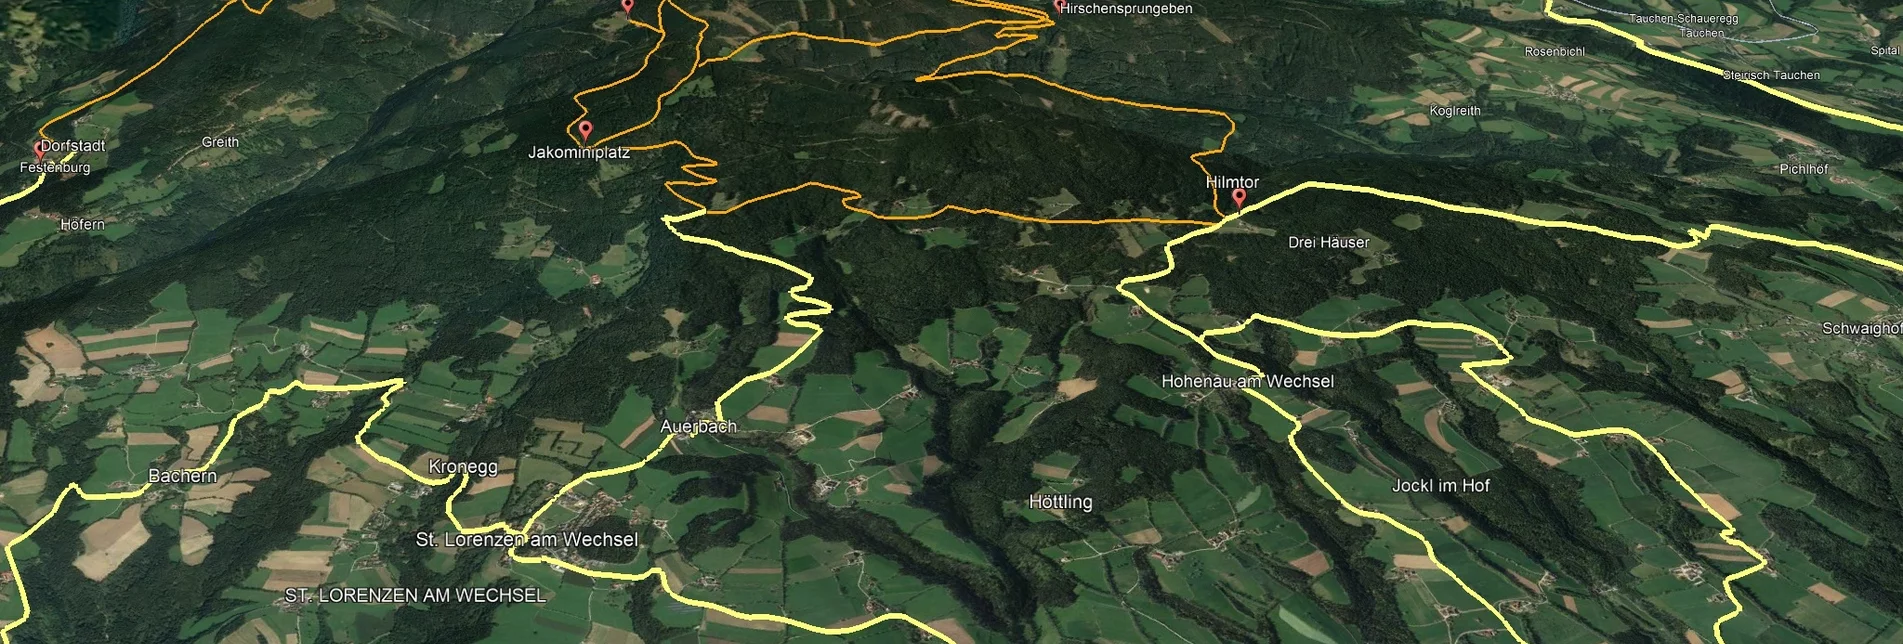 Mountain Biking PREVIEW Styrian Wexl Trails - Dorfstatt Route - Touren-Impression #1 | © Verein Tourismusentwicklung Steirischer Wechsel